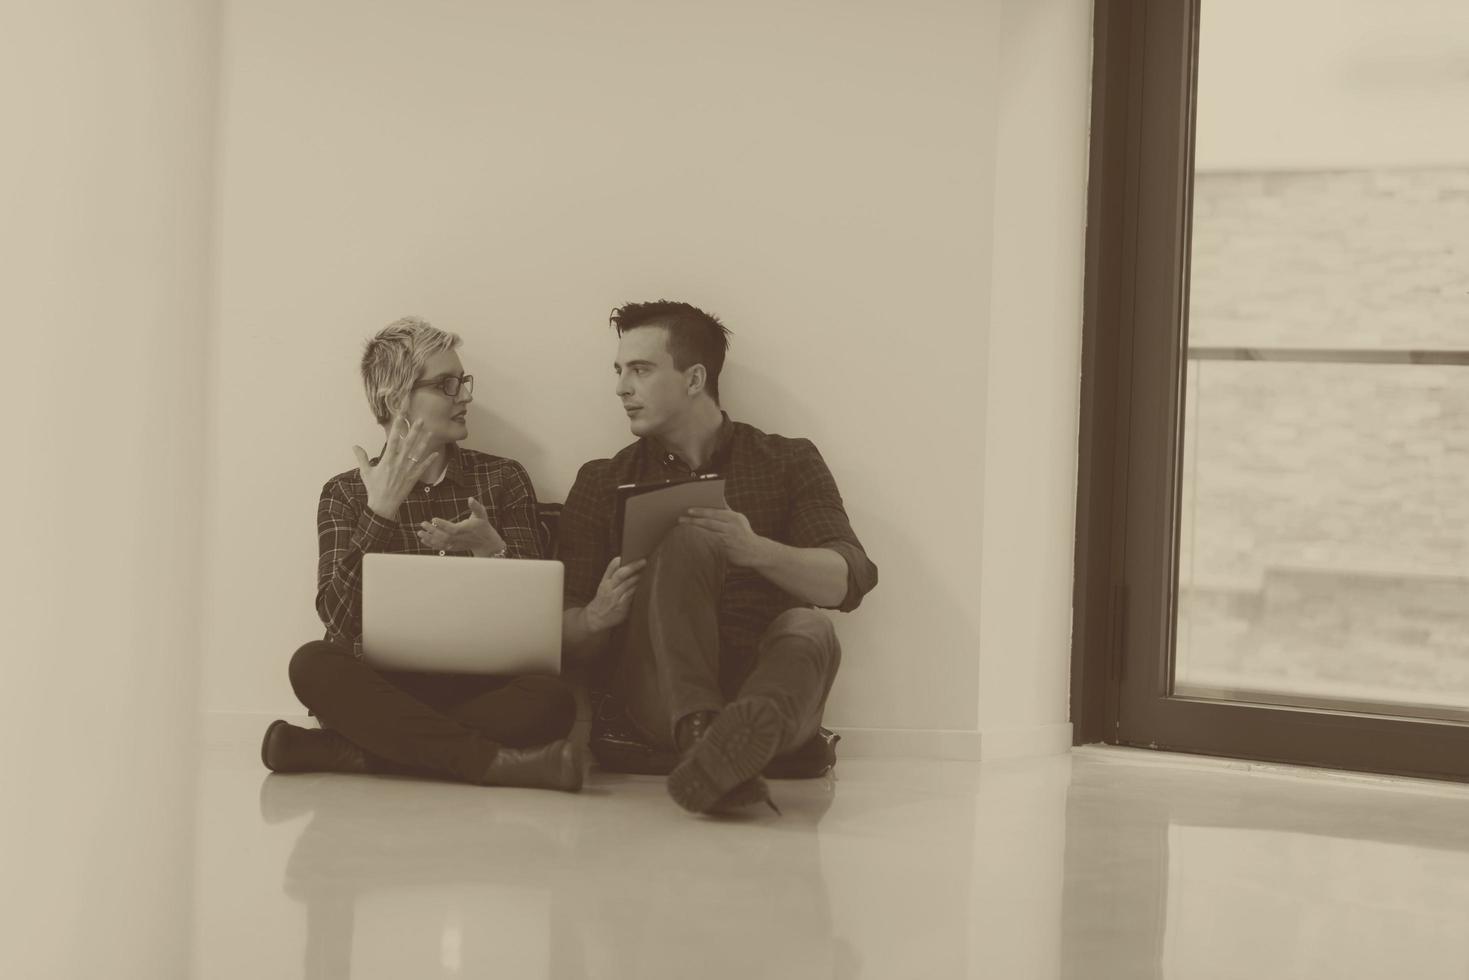 negocio de inicio, pareja trabajando en una computadora portátil en la oficina foto